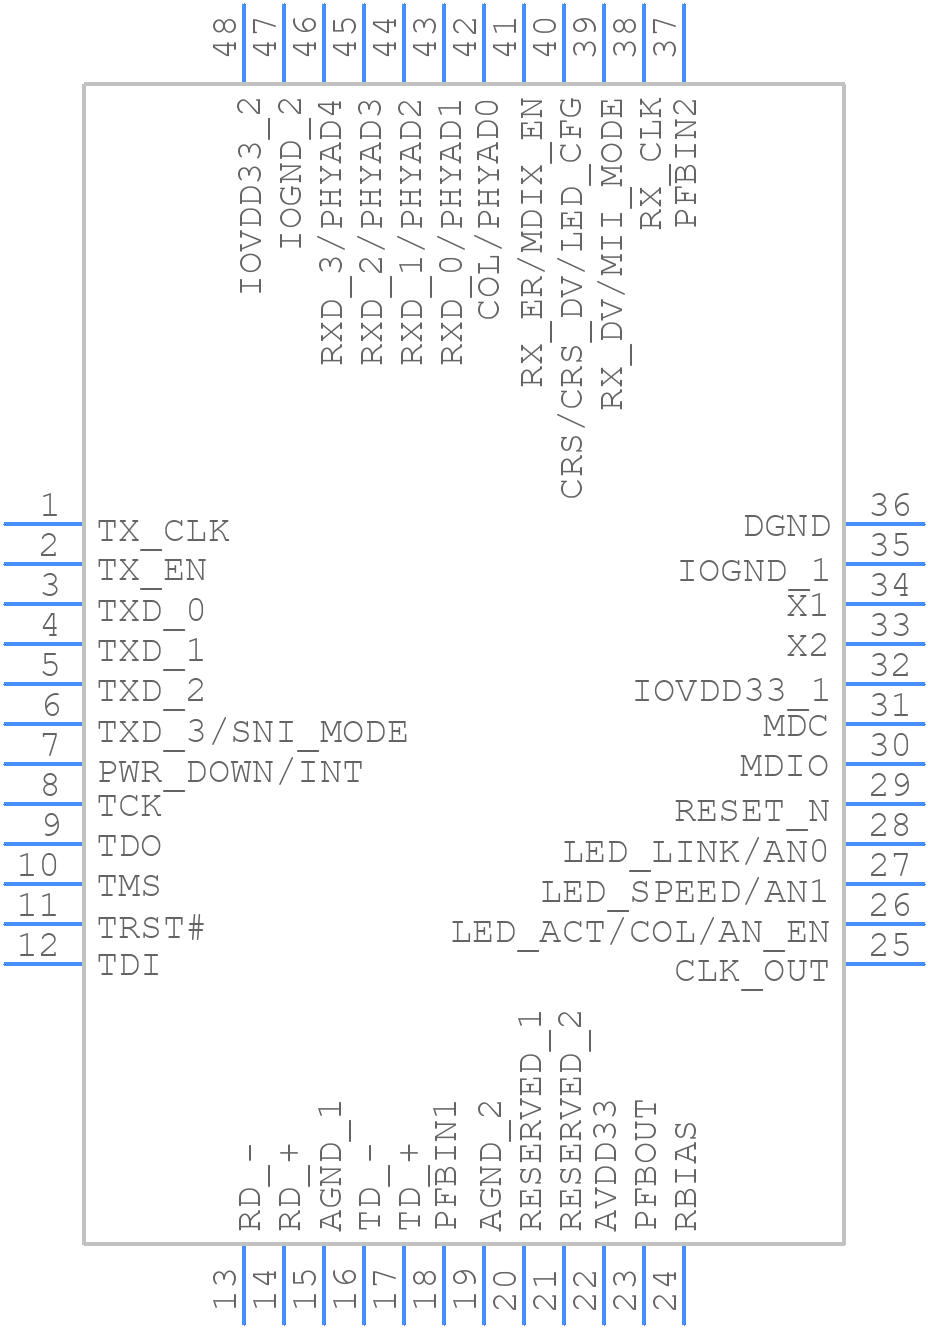 DP83848IVV - Texas Instruments - PCB symbol